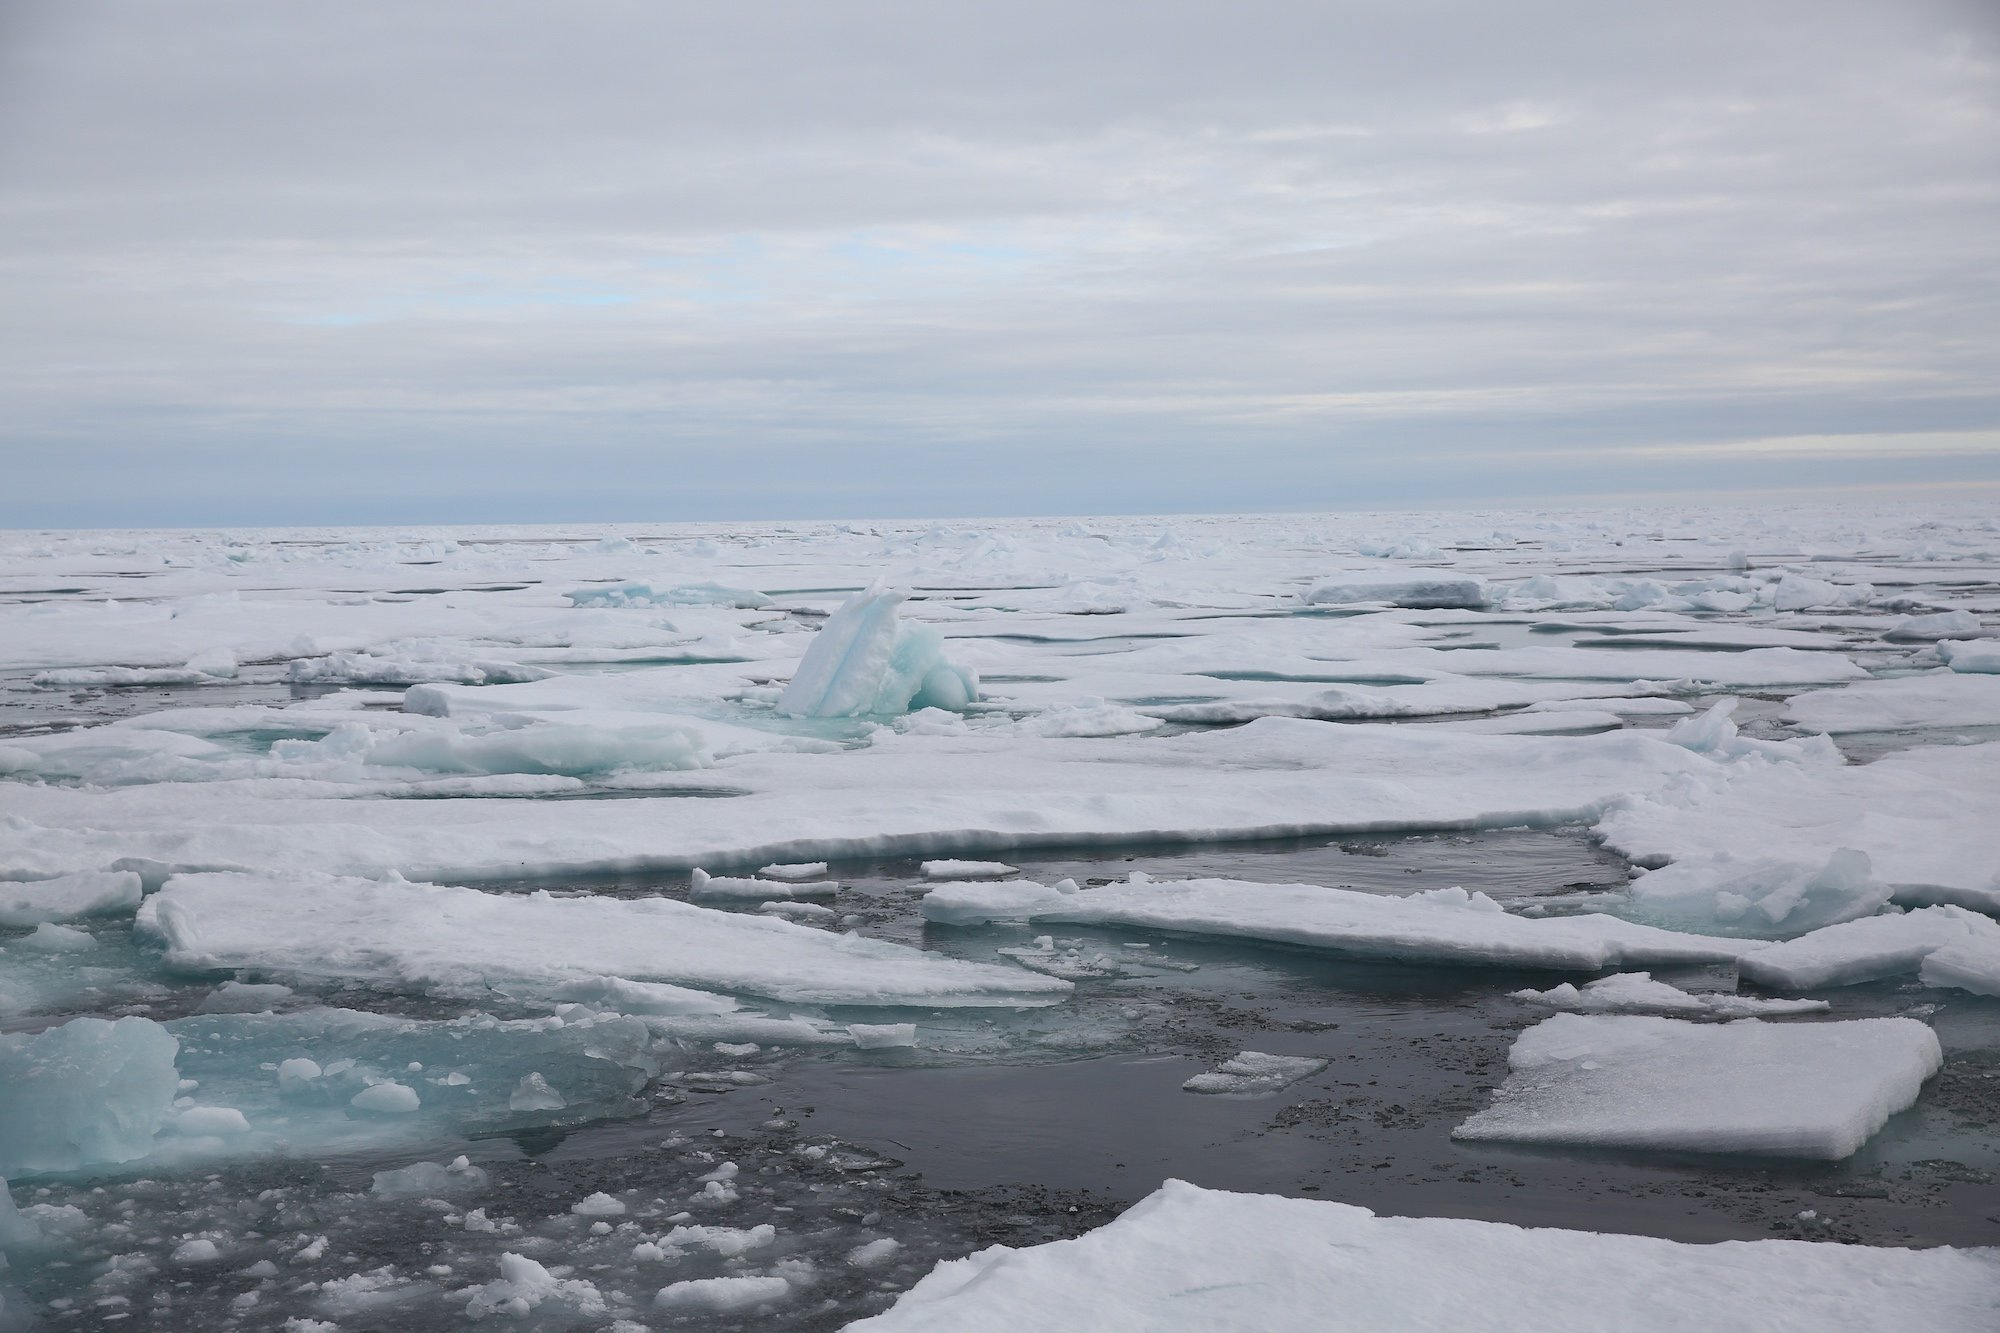 Отчет от южных морей до полярного края. Незамерзающее арктическое море. Арктика Онега. Кромка льда в Баренцевом море. Обледенение в Баренцевом море.